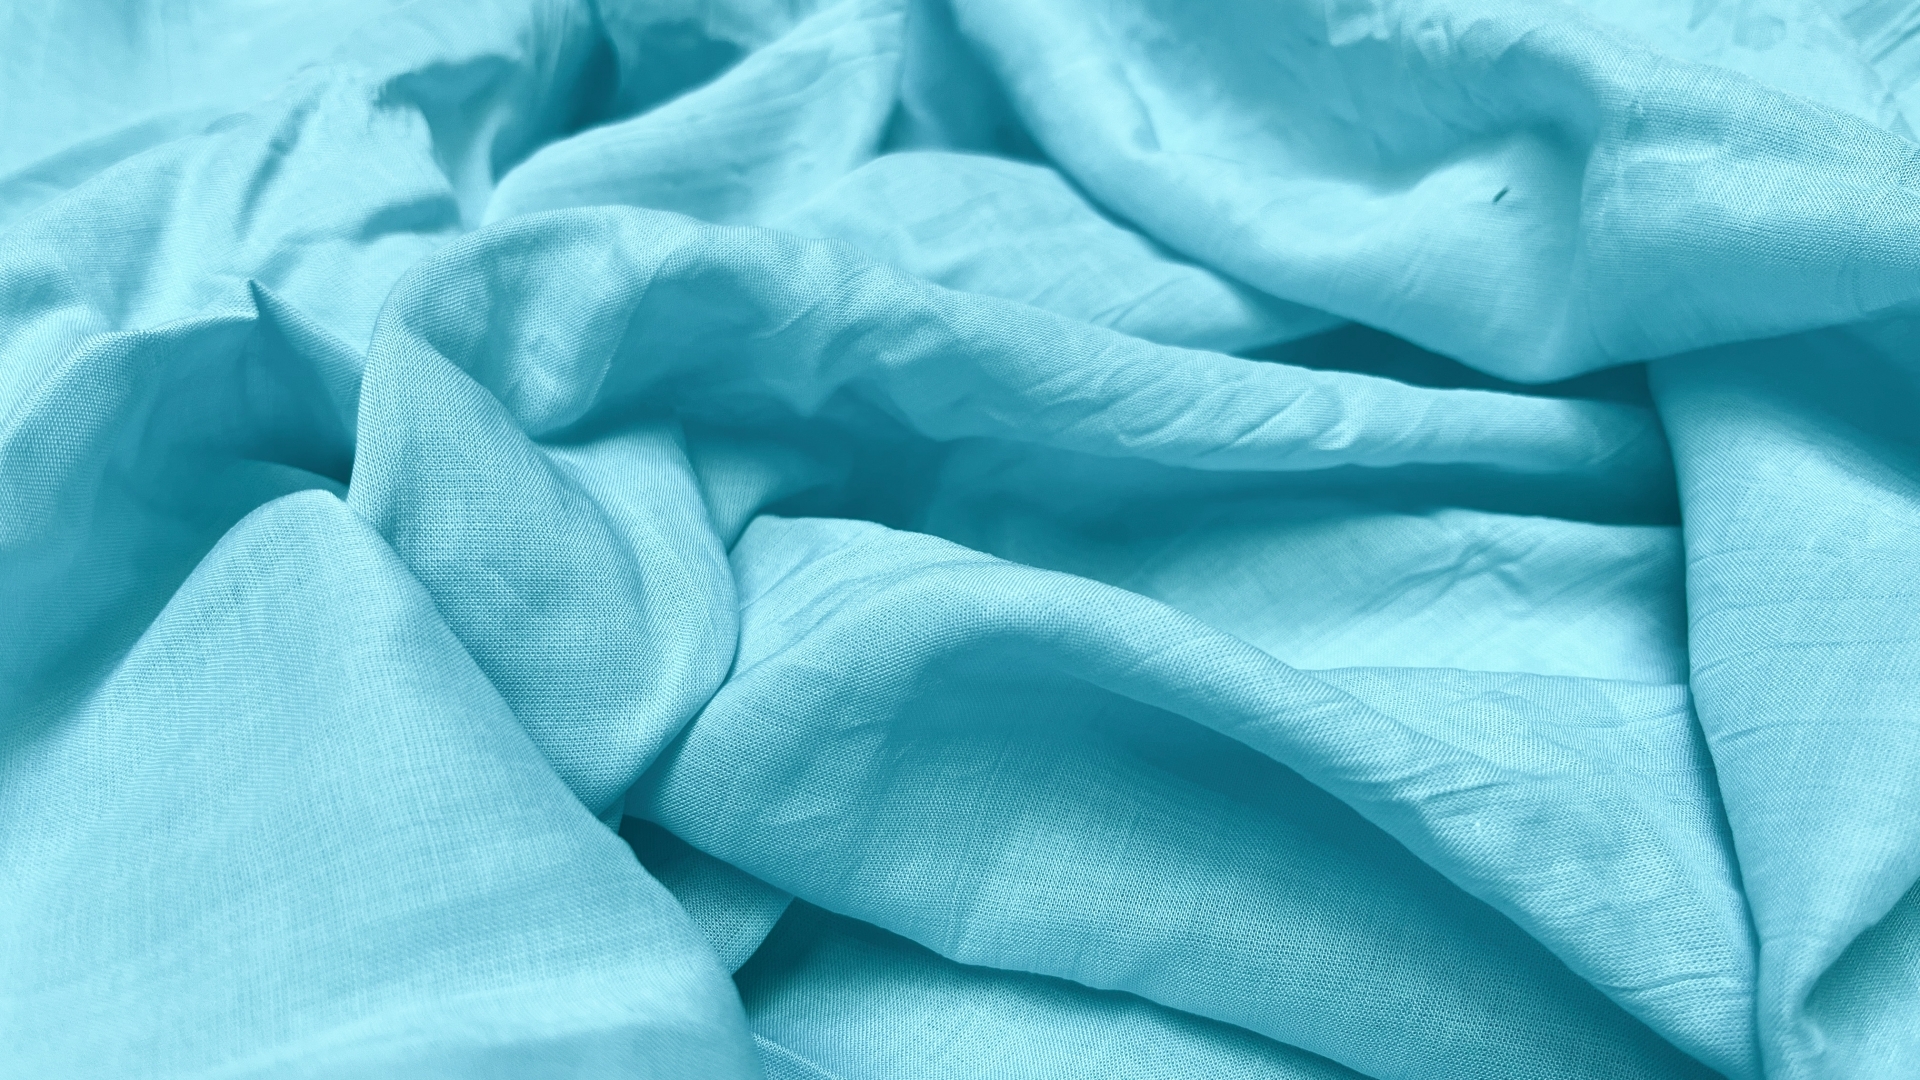 Сорочечная ткань с крэш-эффектом нежно-бирюзового цвета. 

После стирки крэш-эффект становится едва заметным и ширина ткани увеличивается. Из этой ткани получаются великолепные летние платья и блузки, легкие и невесомые.  

Отрезы: 5,5 м.  3,7 м. 3,0 м.